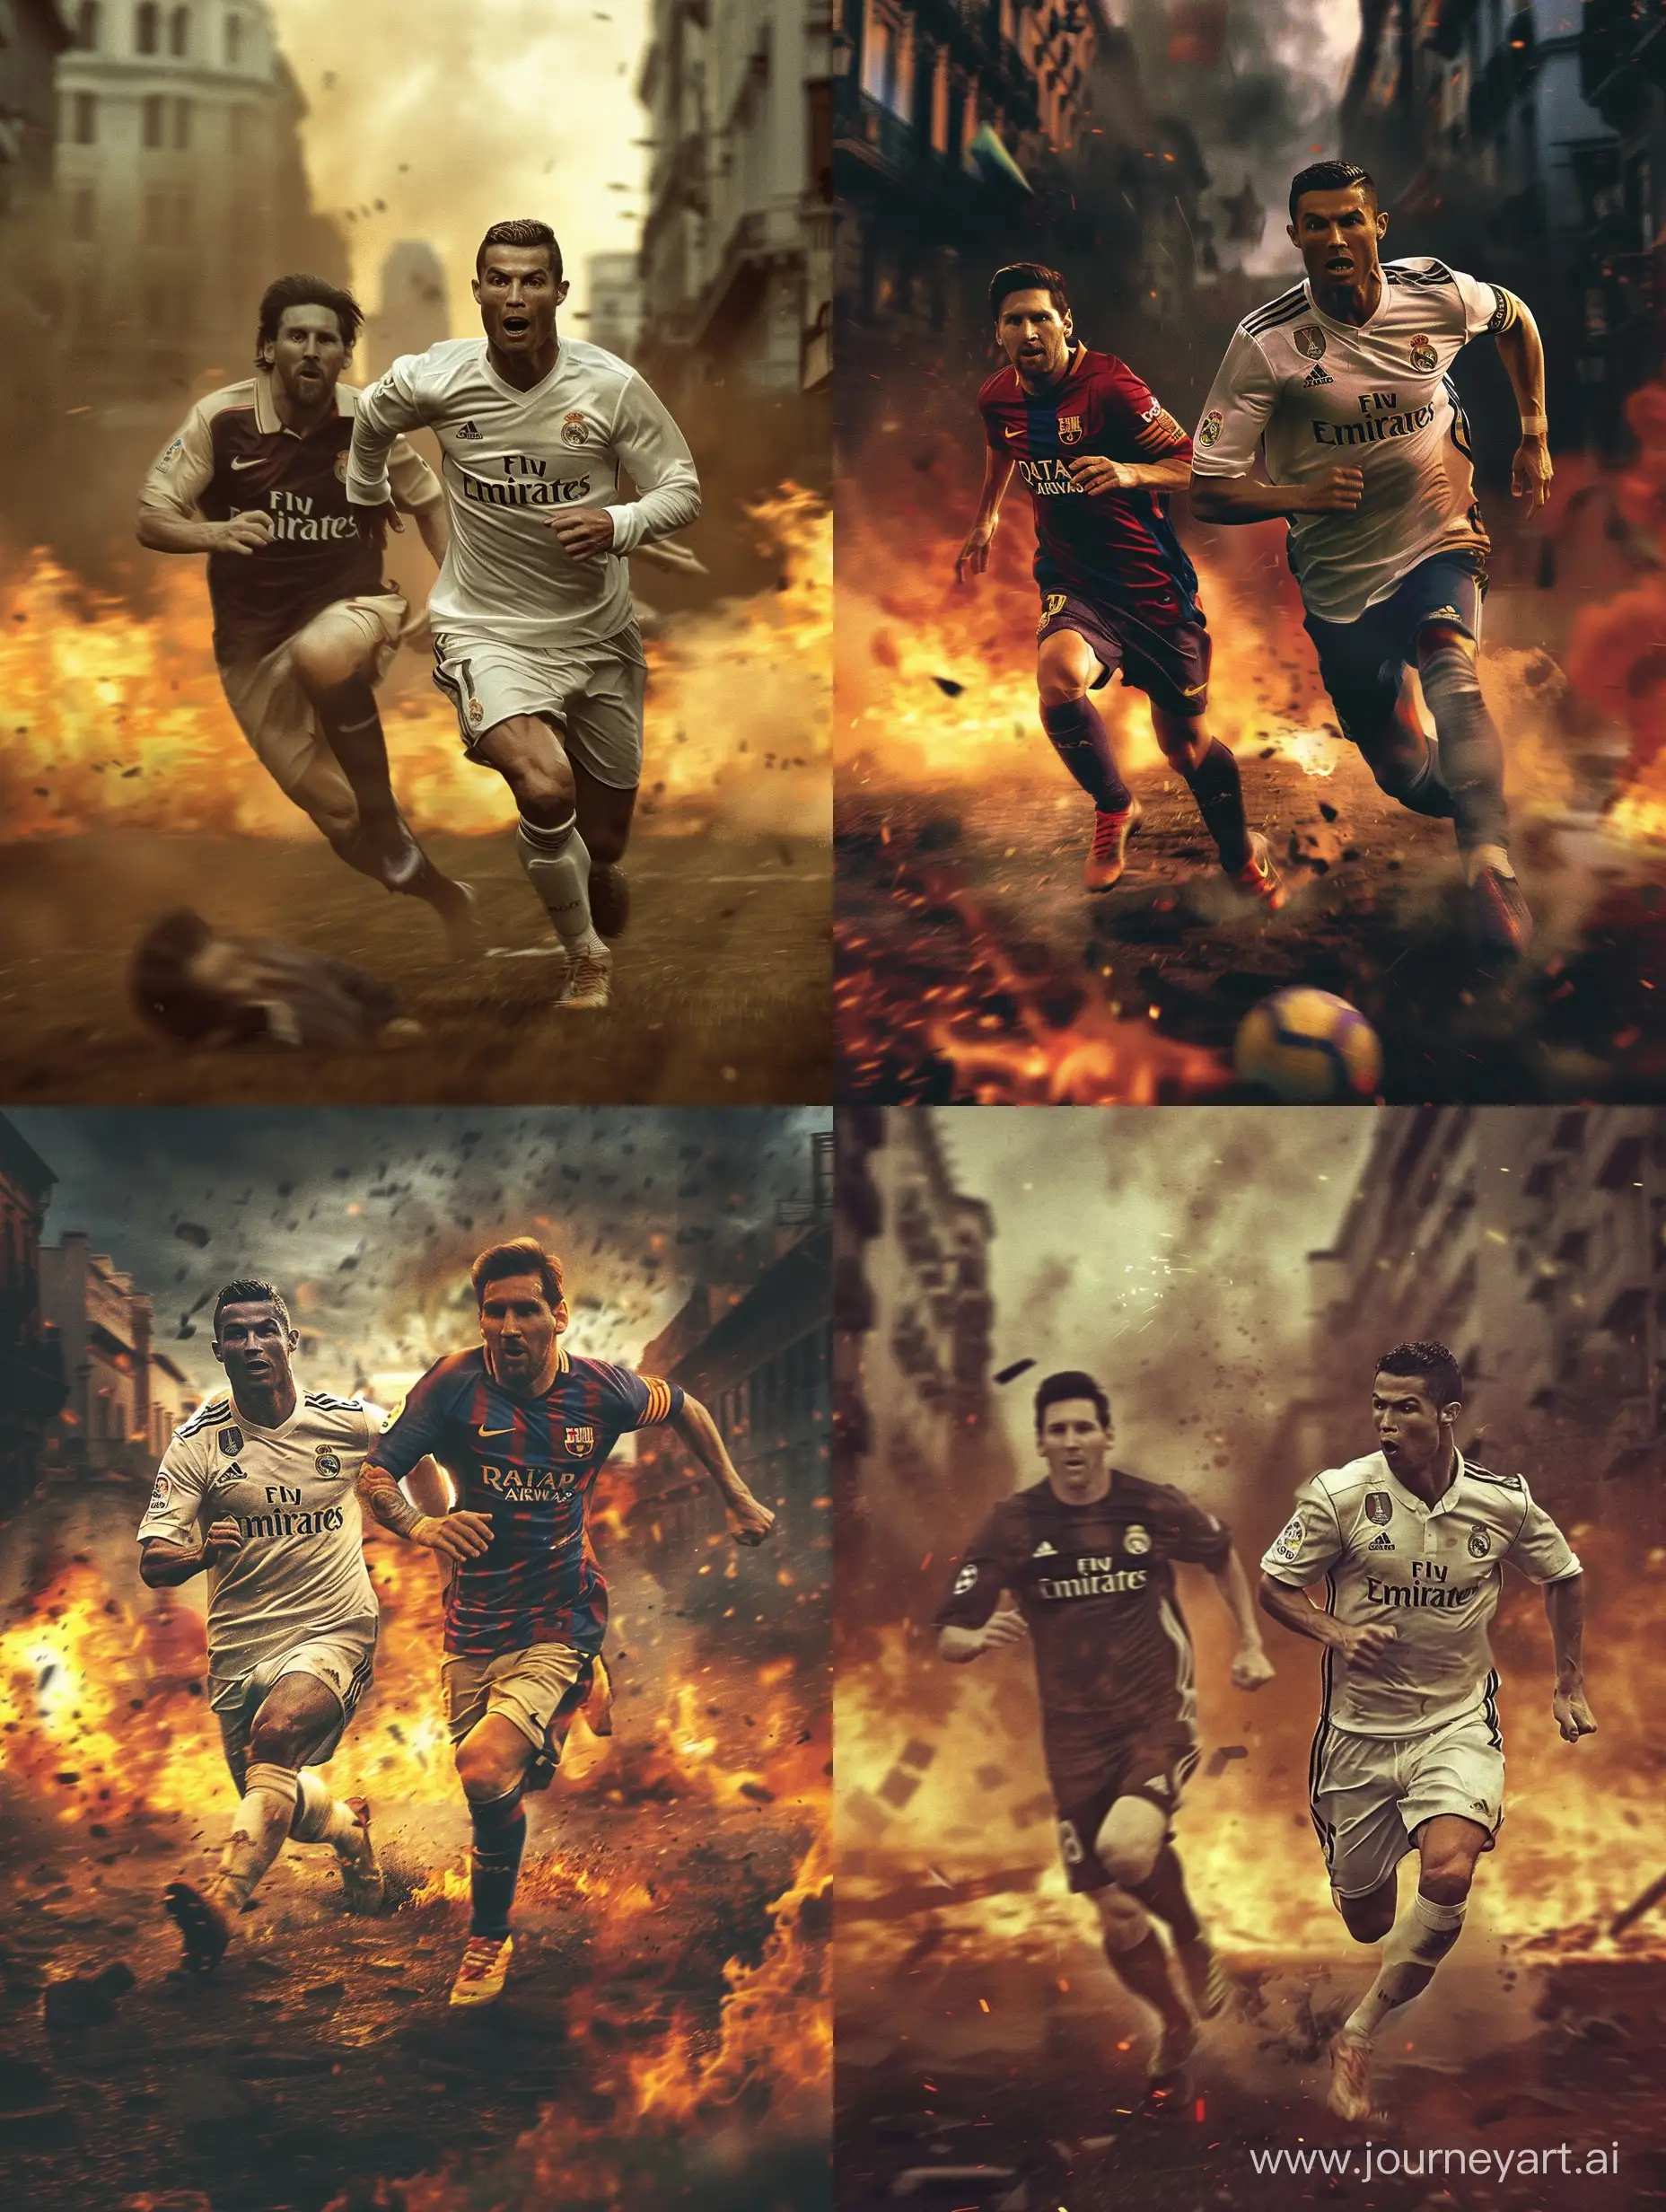 Intense-Chase-Cristiano-Ronaldo-Evading-Lionel-Messi-in-a-Fiery-Urban-Landscape